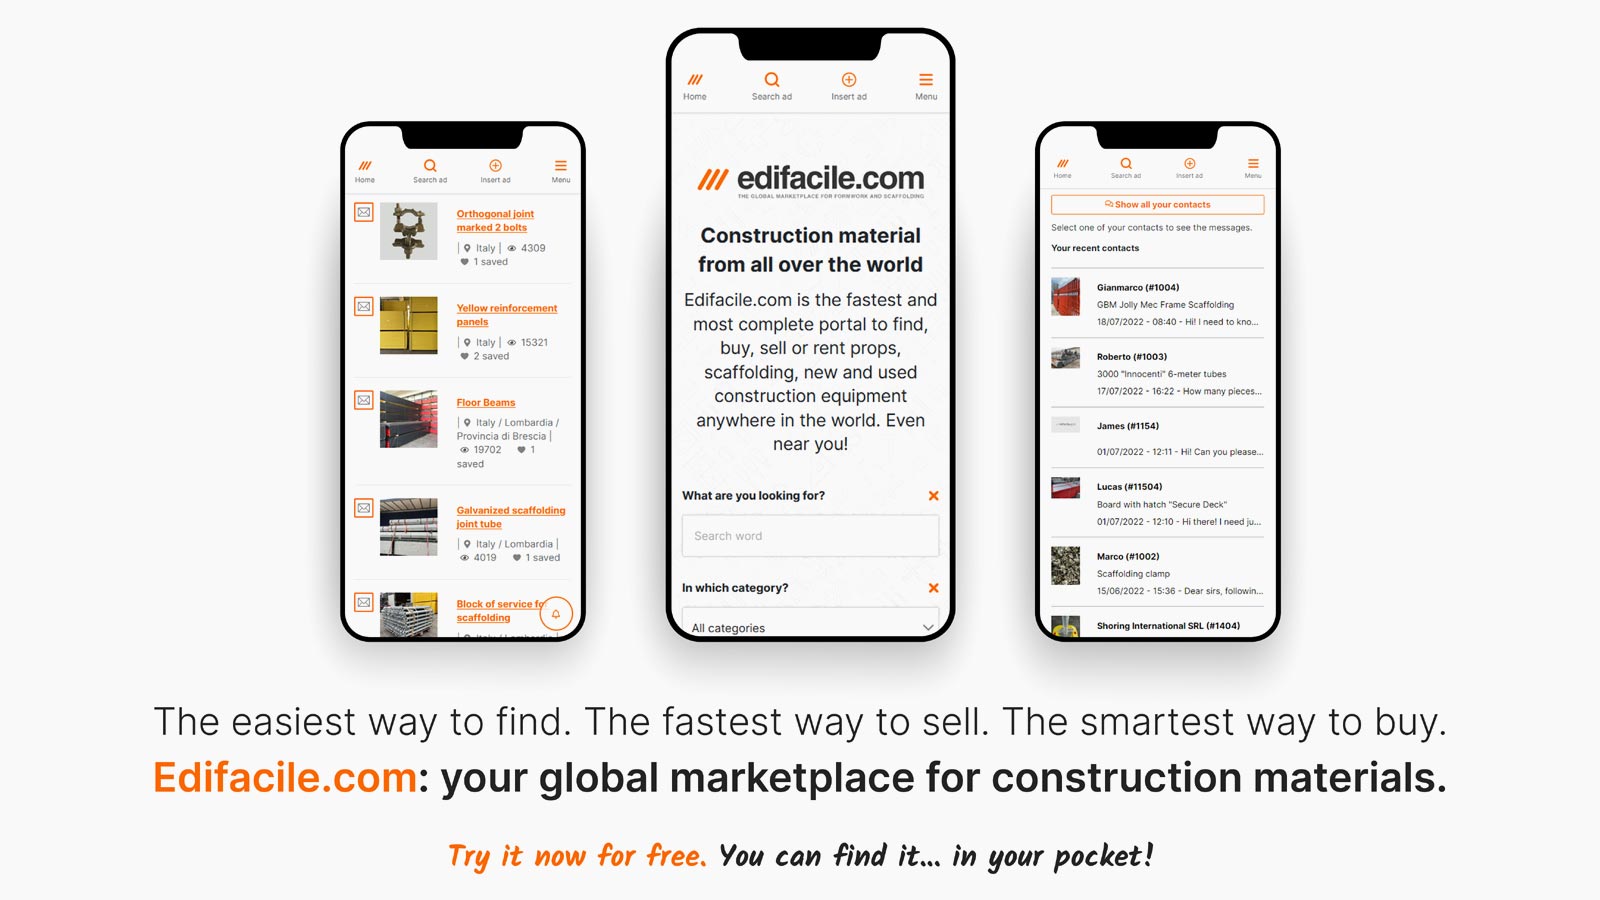 Edifacile.com website interface